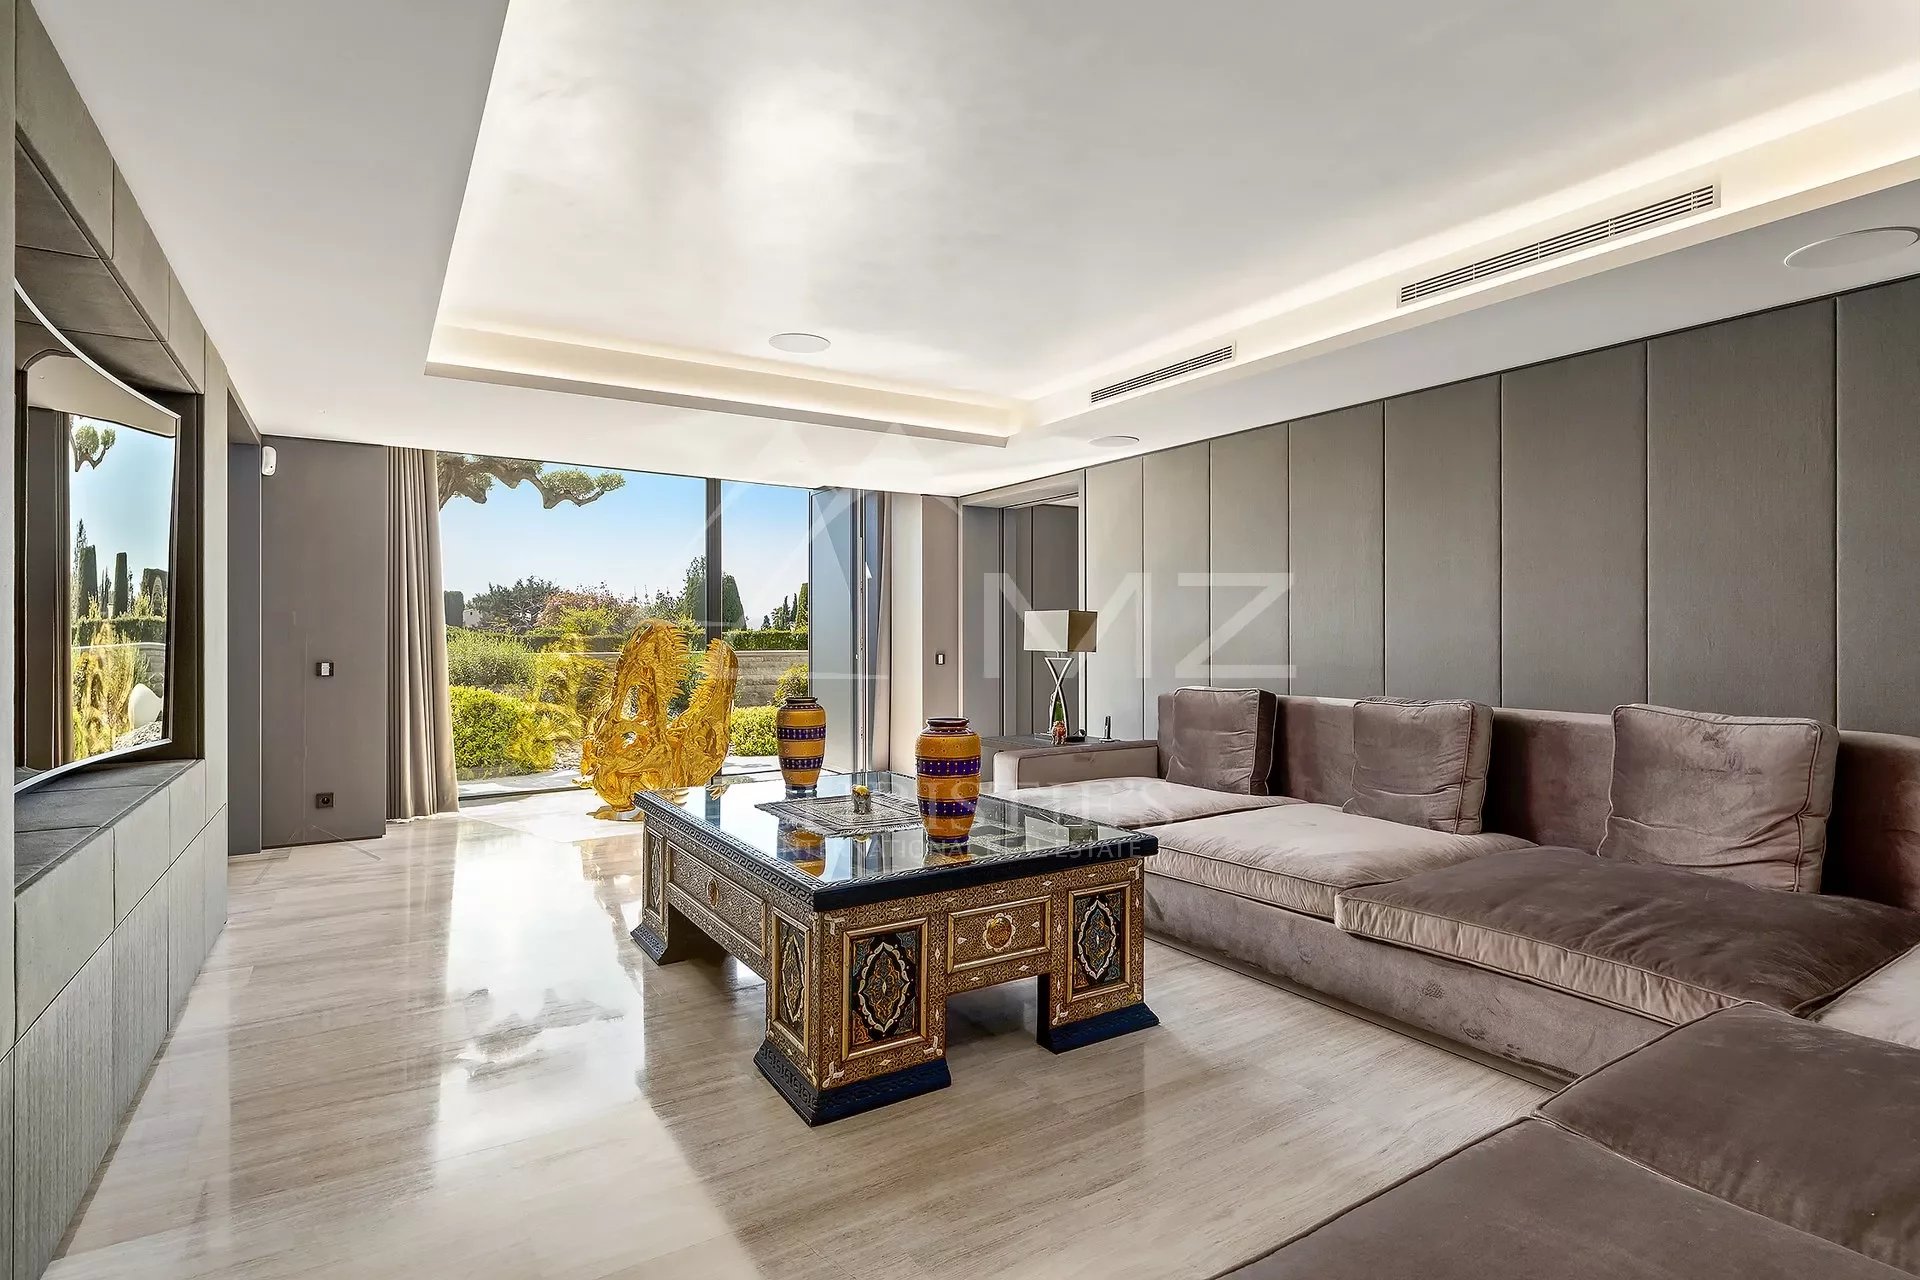 Villa contemporaine neuve aux prestations luxueuses